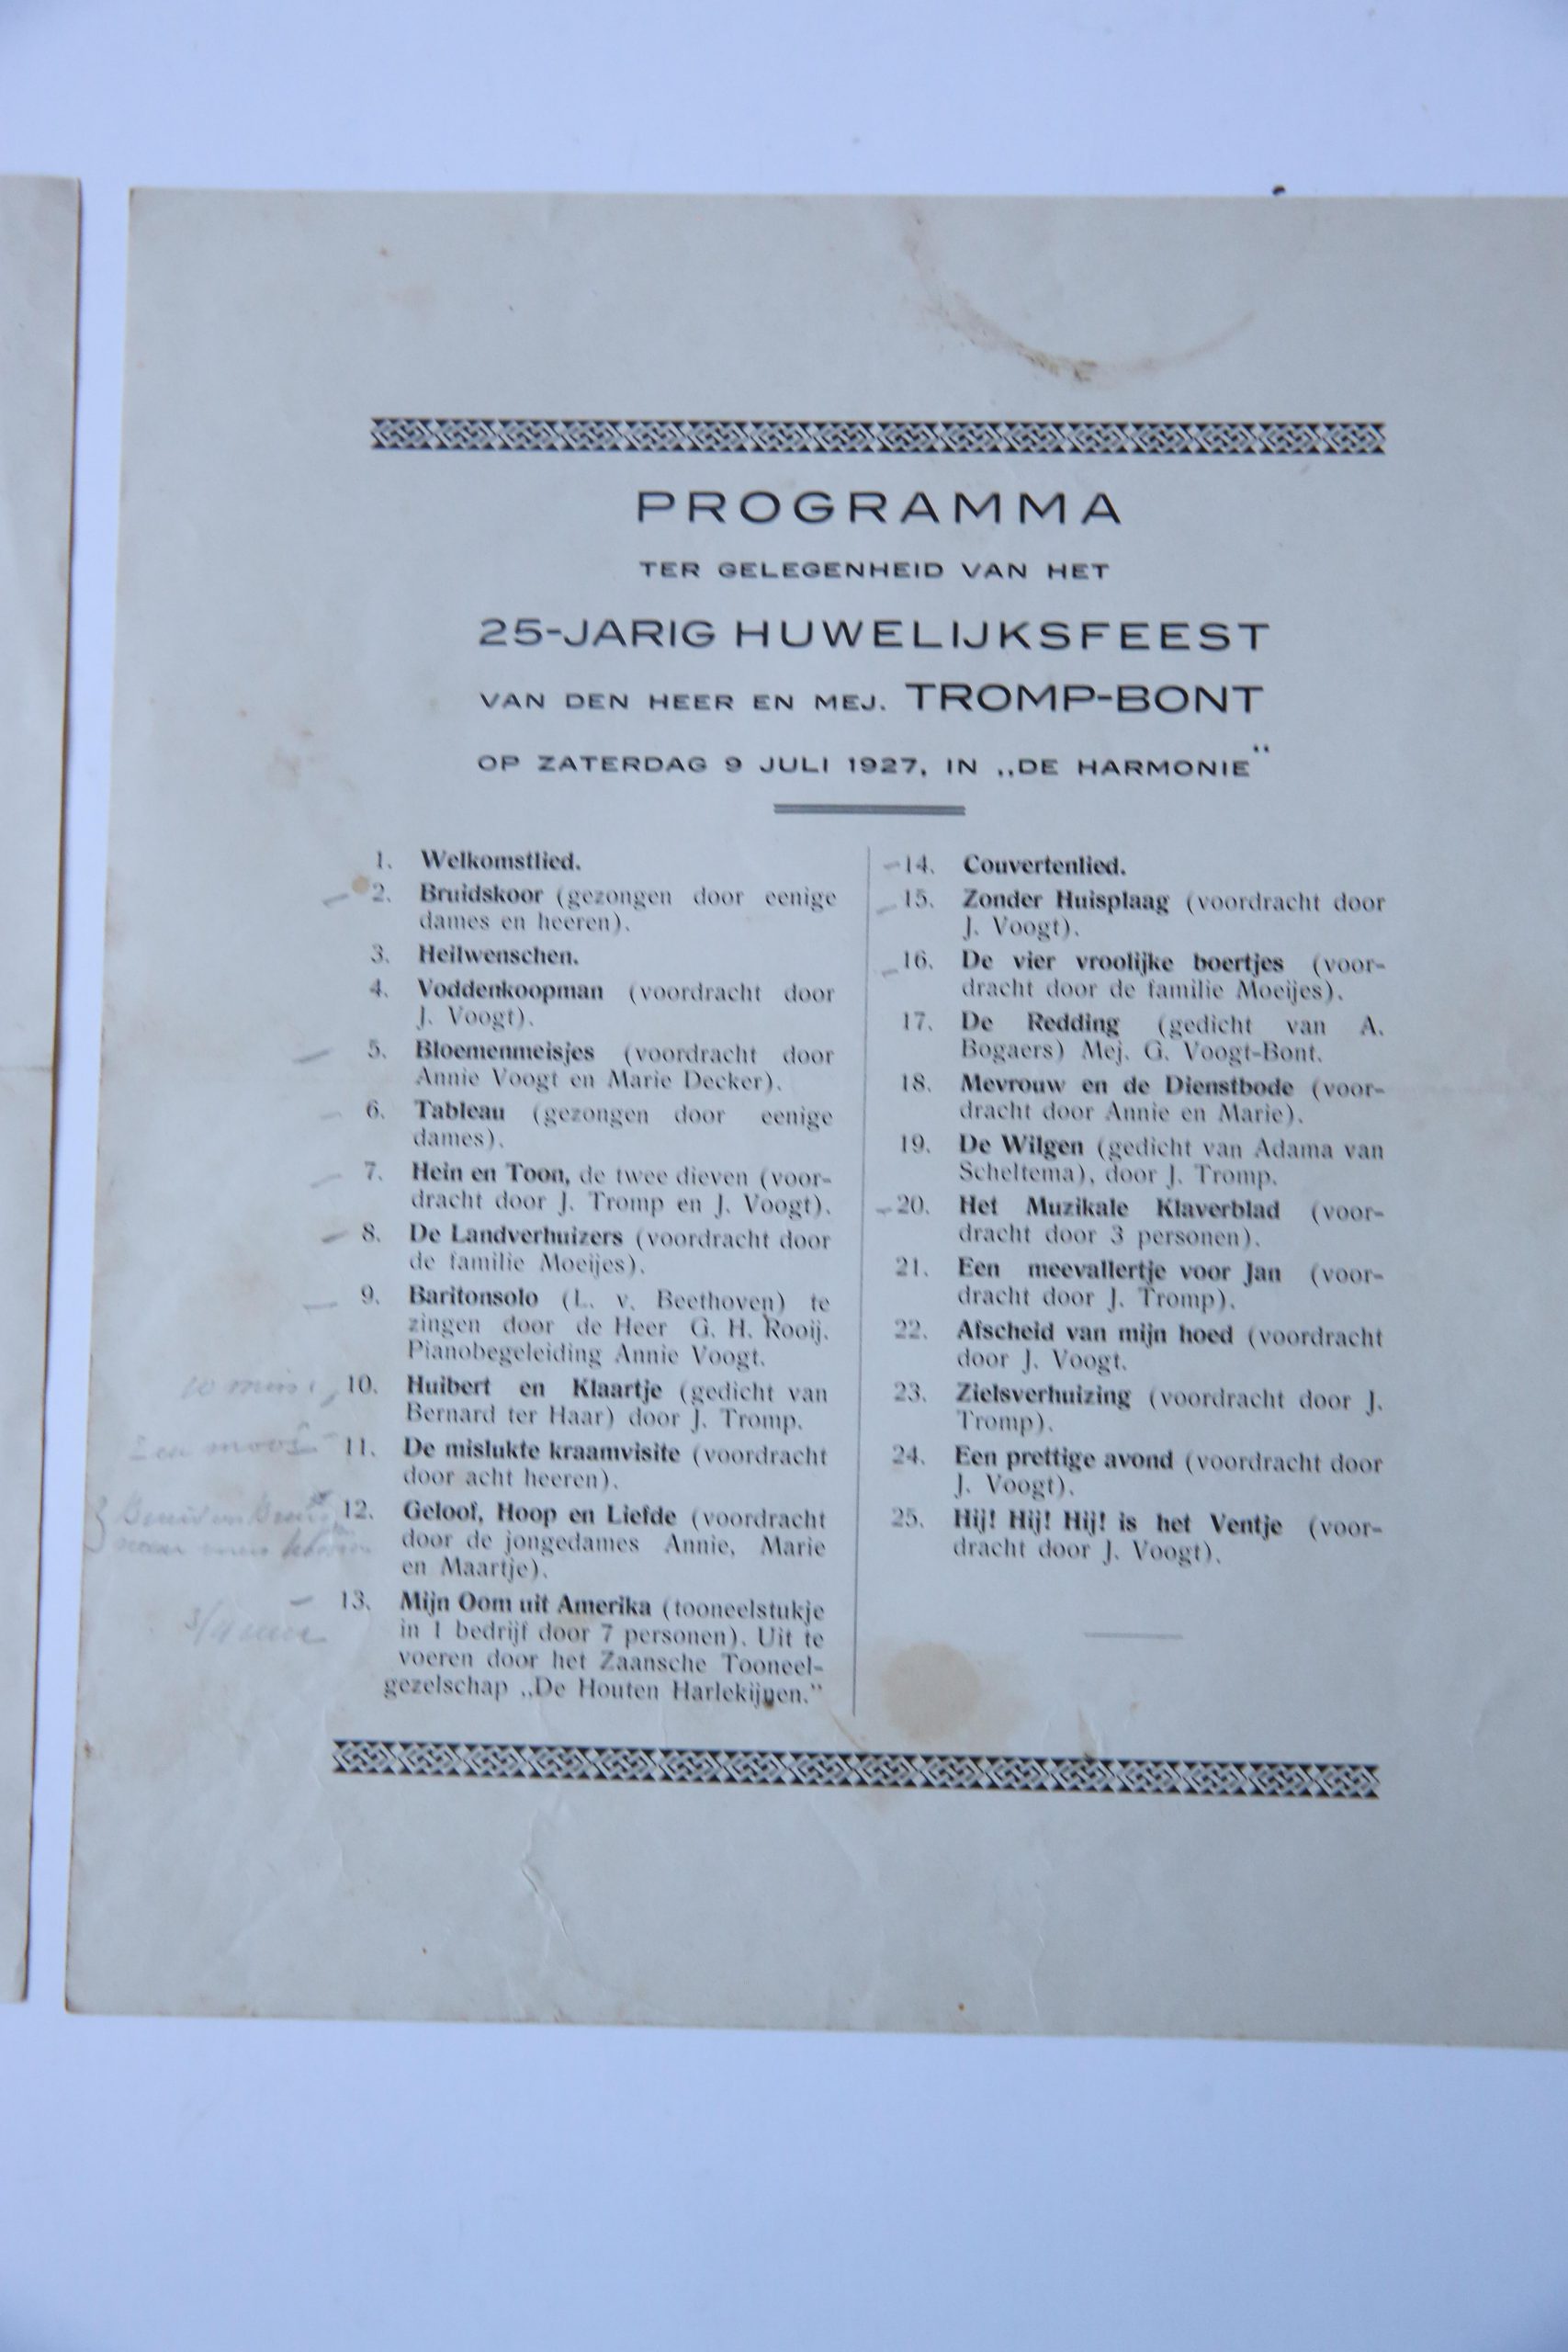  - Programma t.g.v. het 25-jarig huwelijksfeest van den heer en mej. Tromp-bont op Zaterdag 9 juli 1927 in De Harmonie. 4:[1] p.